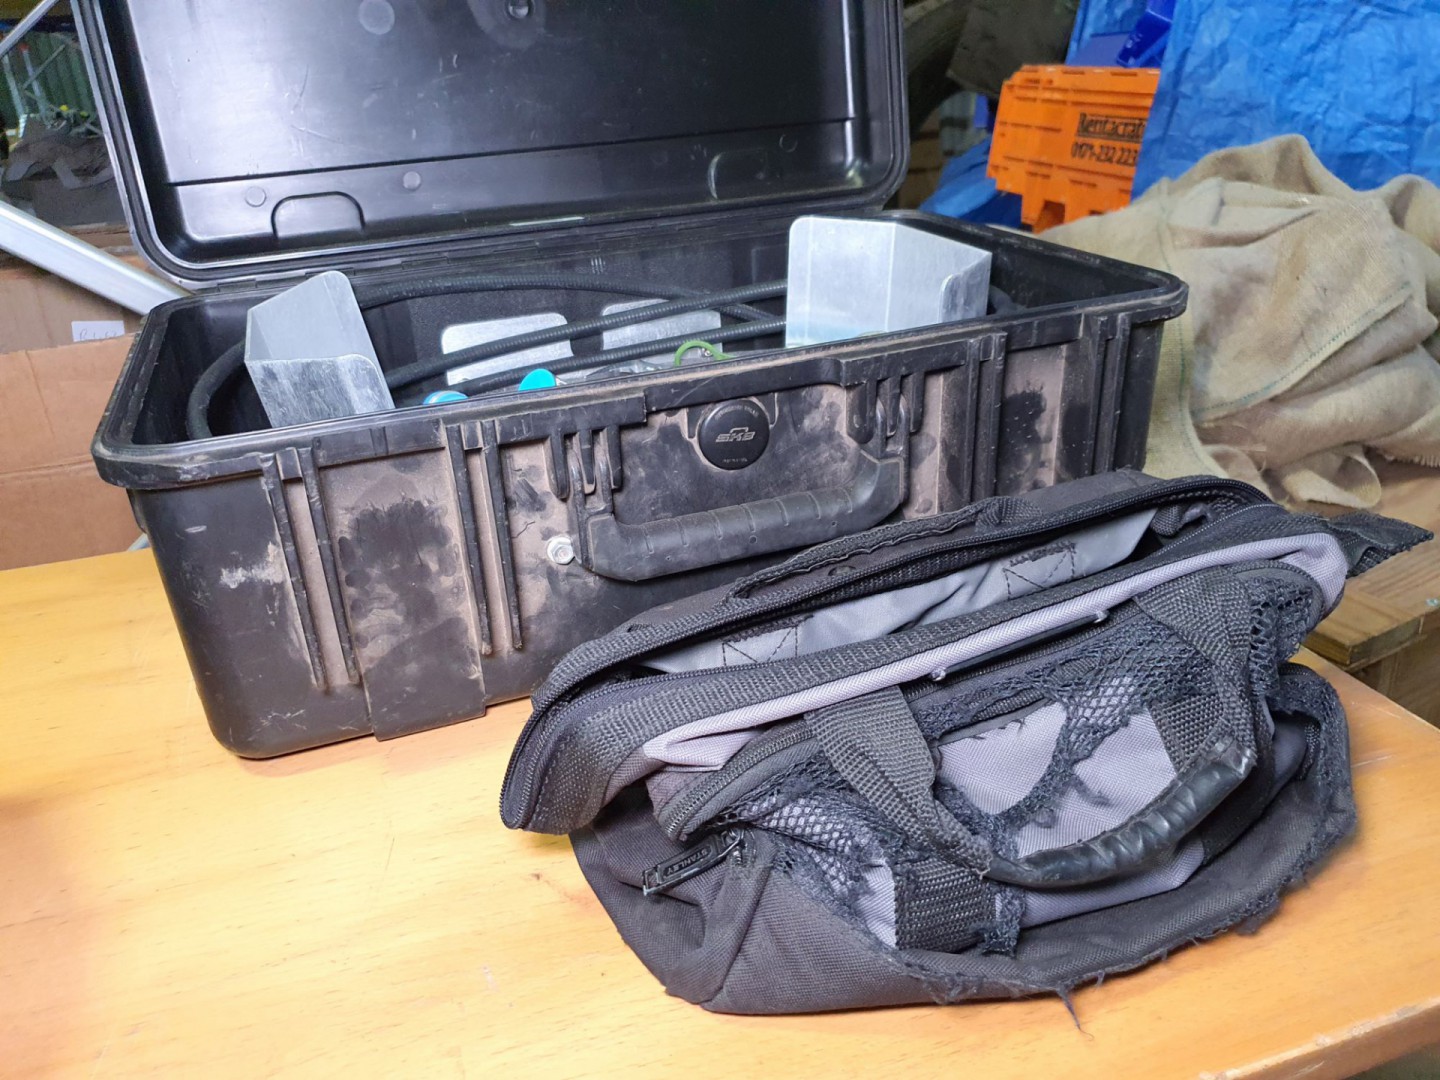 Kaelus PIM IMT accessories in black protector case